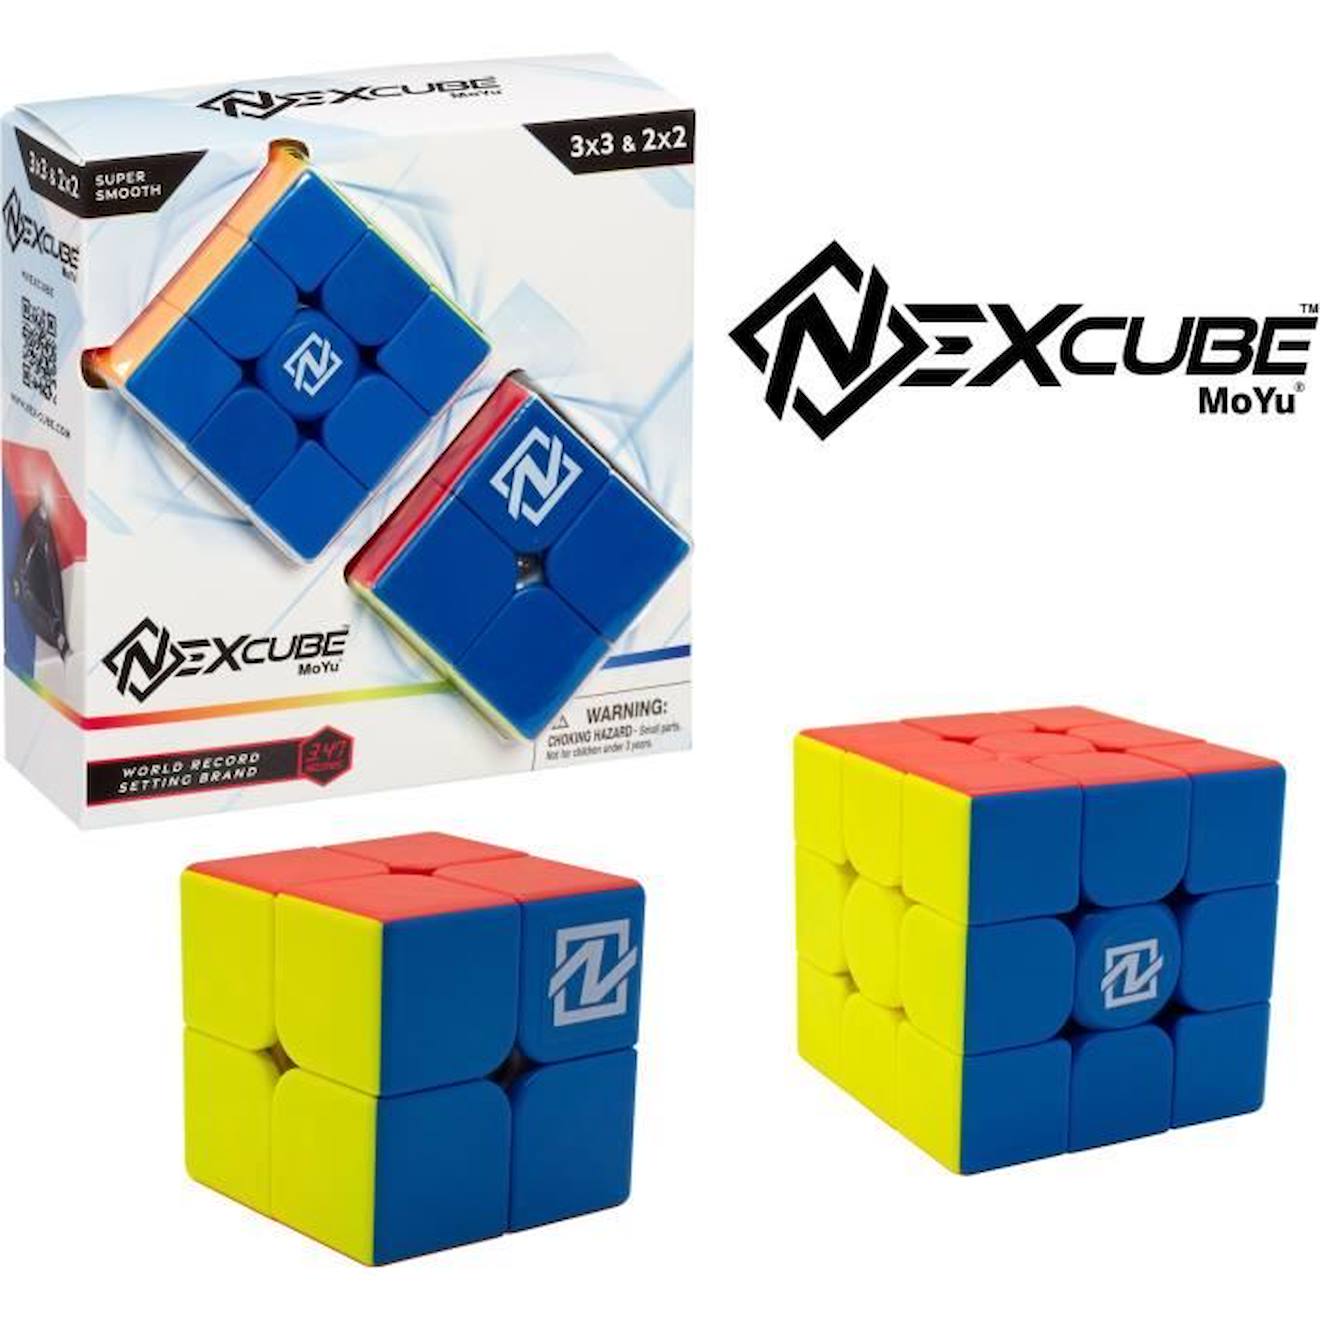 Puzzle Cube Nexcube 3x3 + 2x2 Classic - Moyu - Multicolore - Extérieur - Neuf Bleu